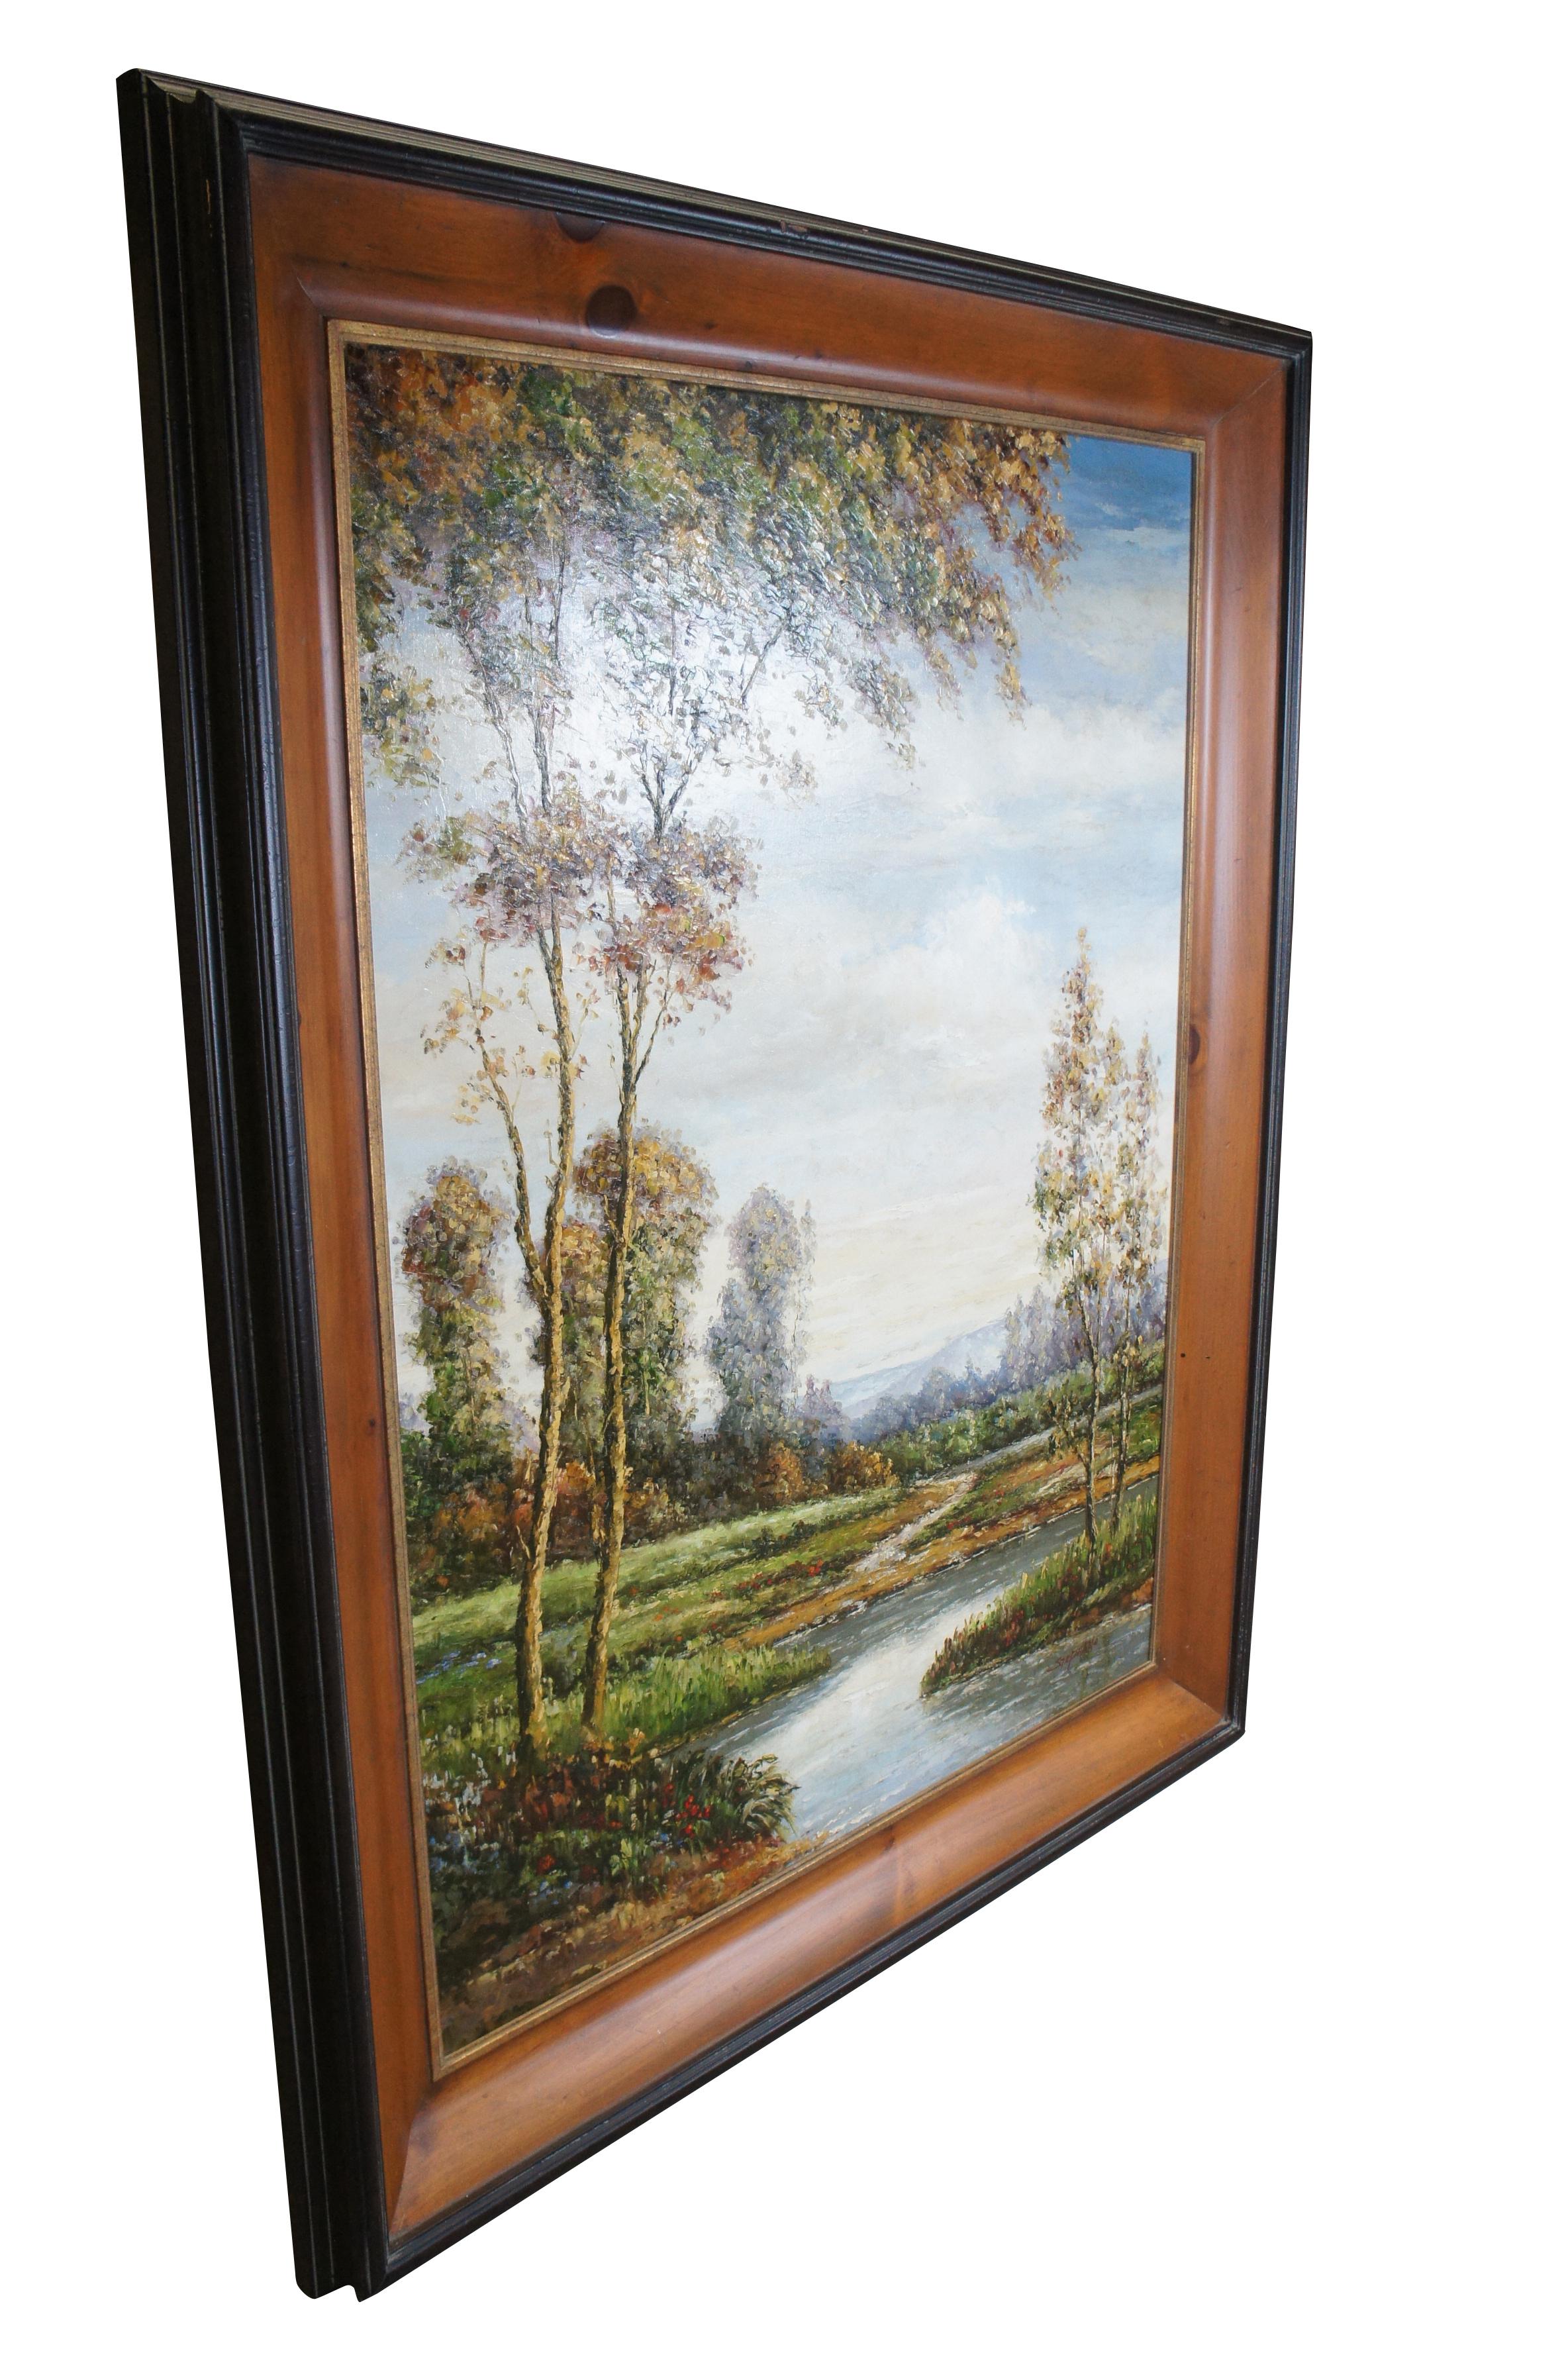 Grande et impressionnante peinture à l'huile sur toile de style impressionniste / Barbizon représentant une rivière coulant à travers une campagne pittoresque.  Encadré dans un cadre en pin ébonisé.

L. Stephano qui est né le 4 octobre 1948 à